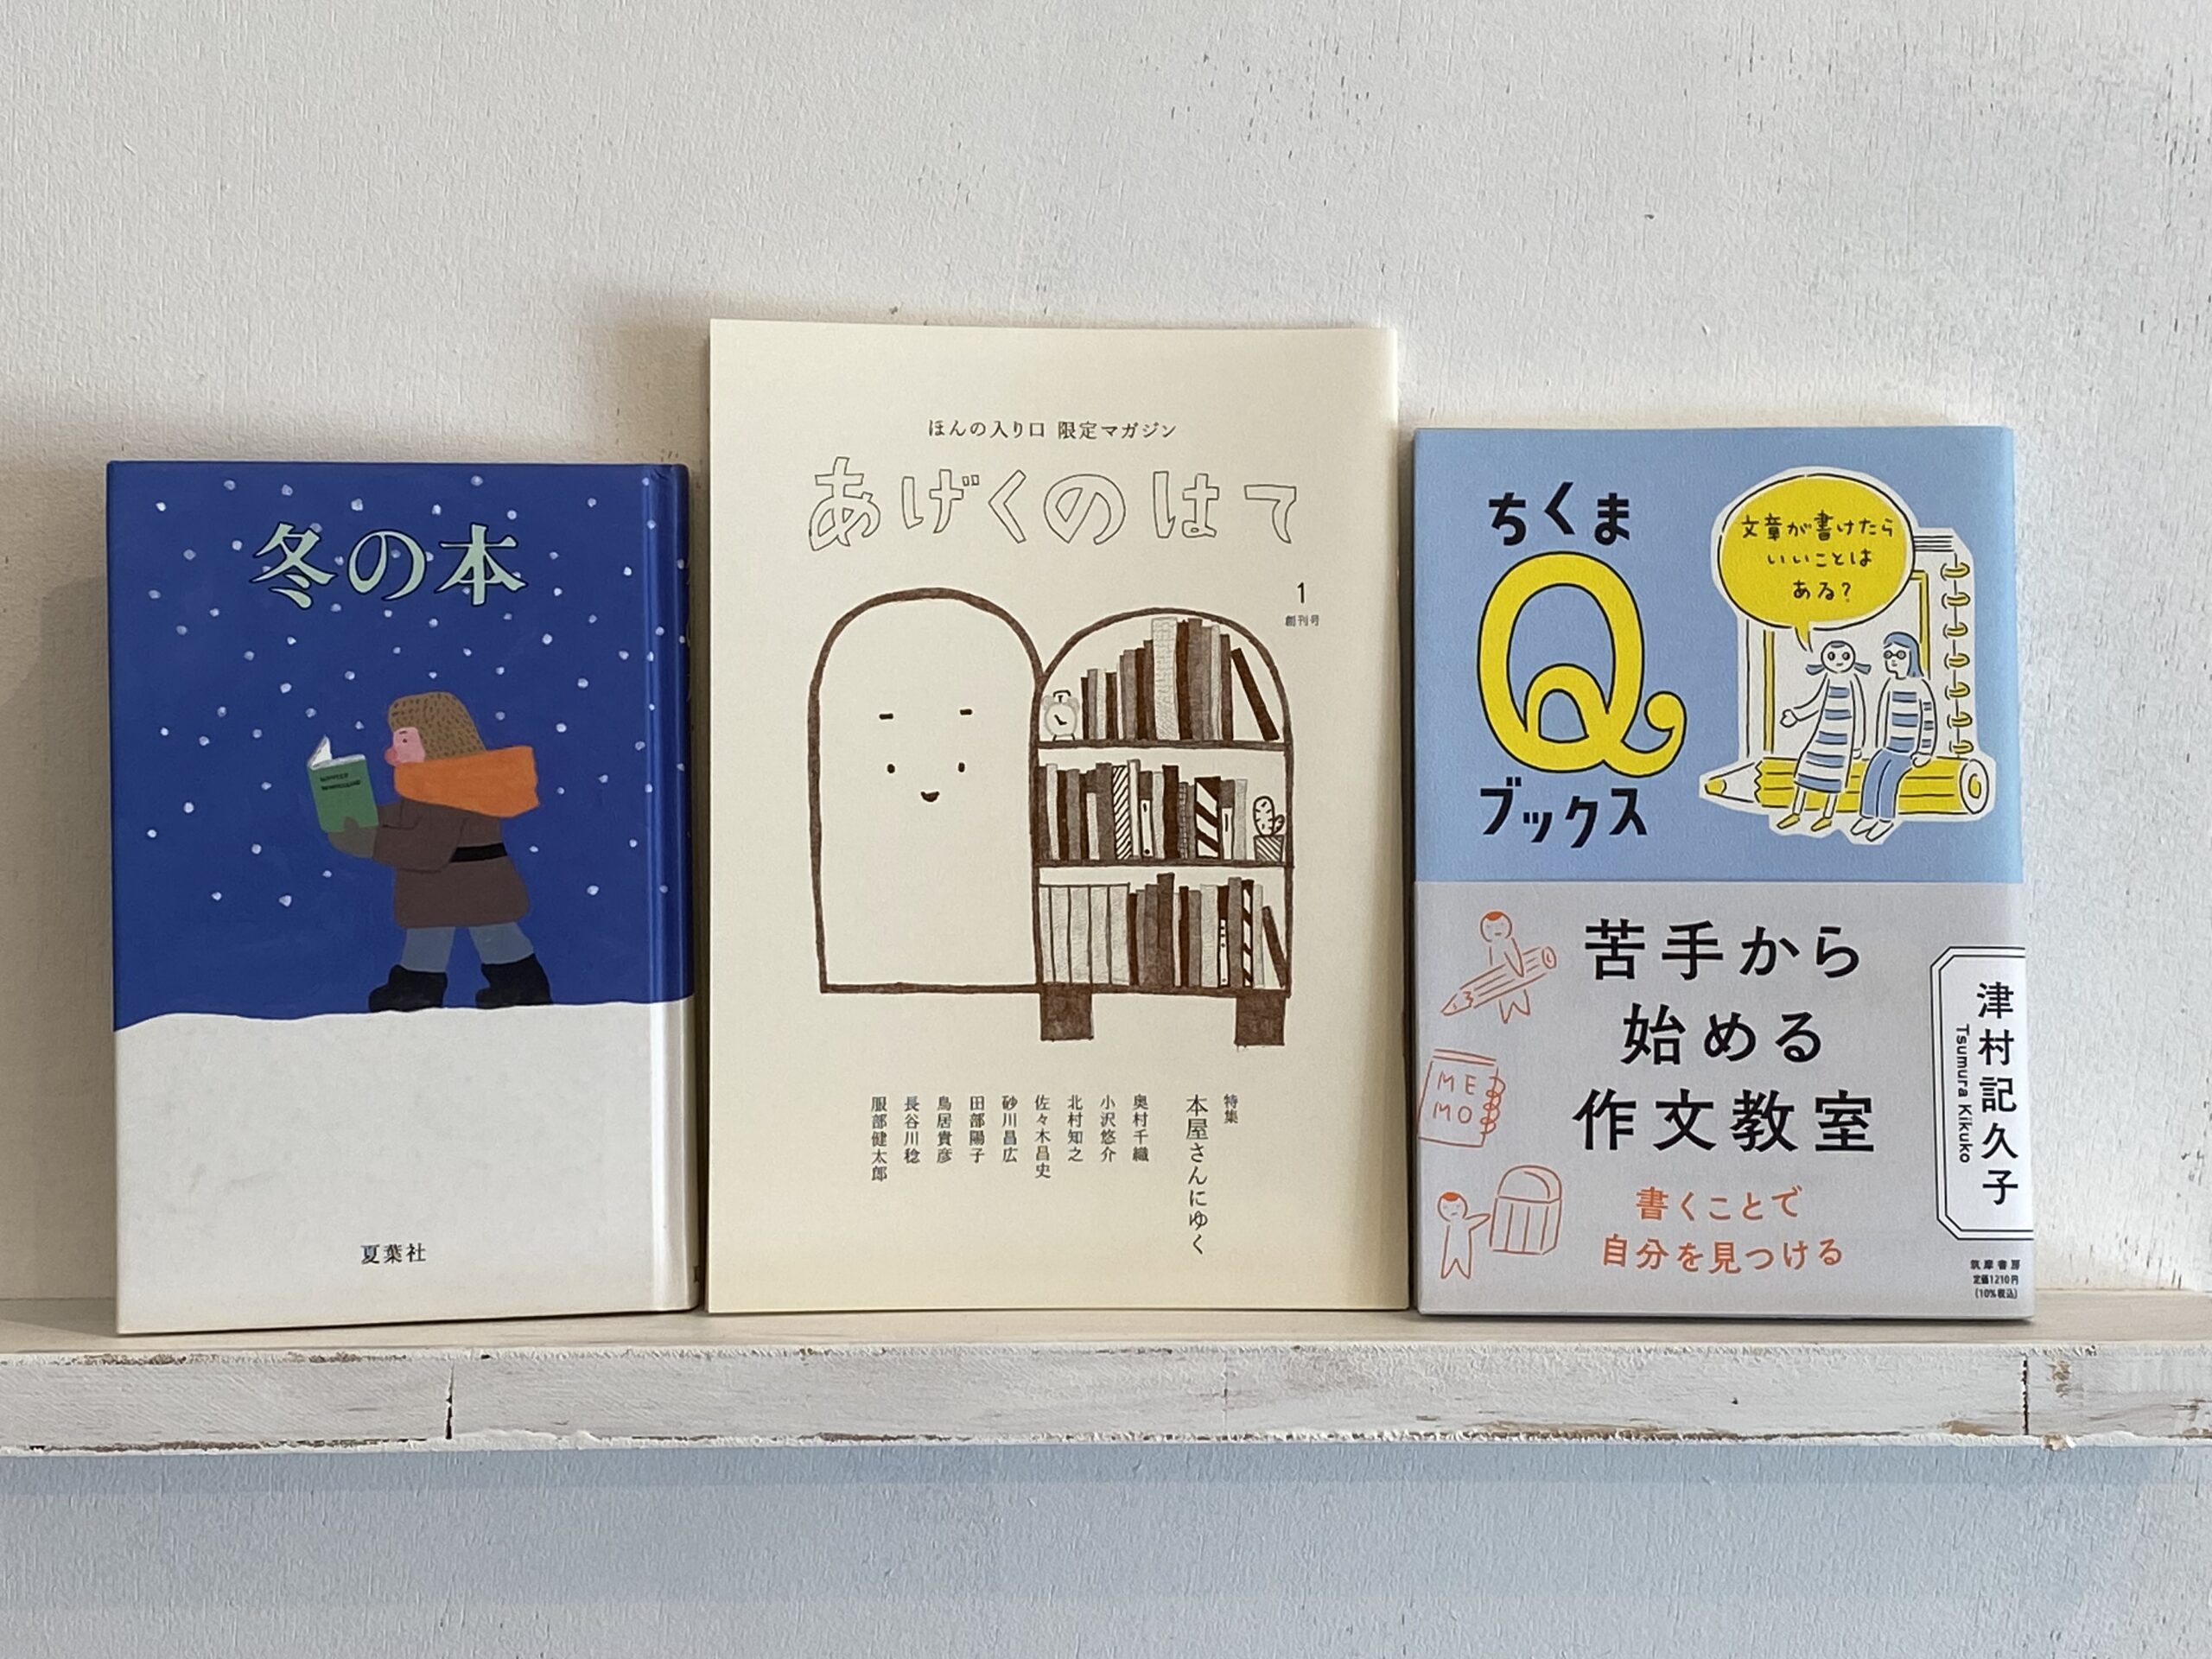 FM京都モーニングスプライトで本を紹介しました。